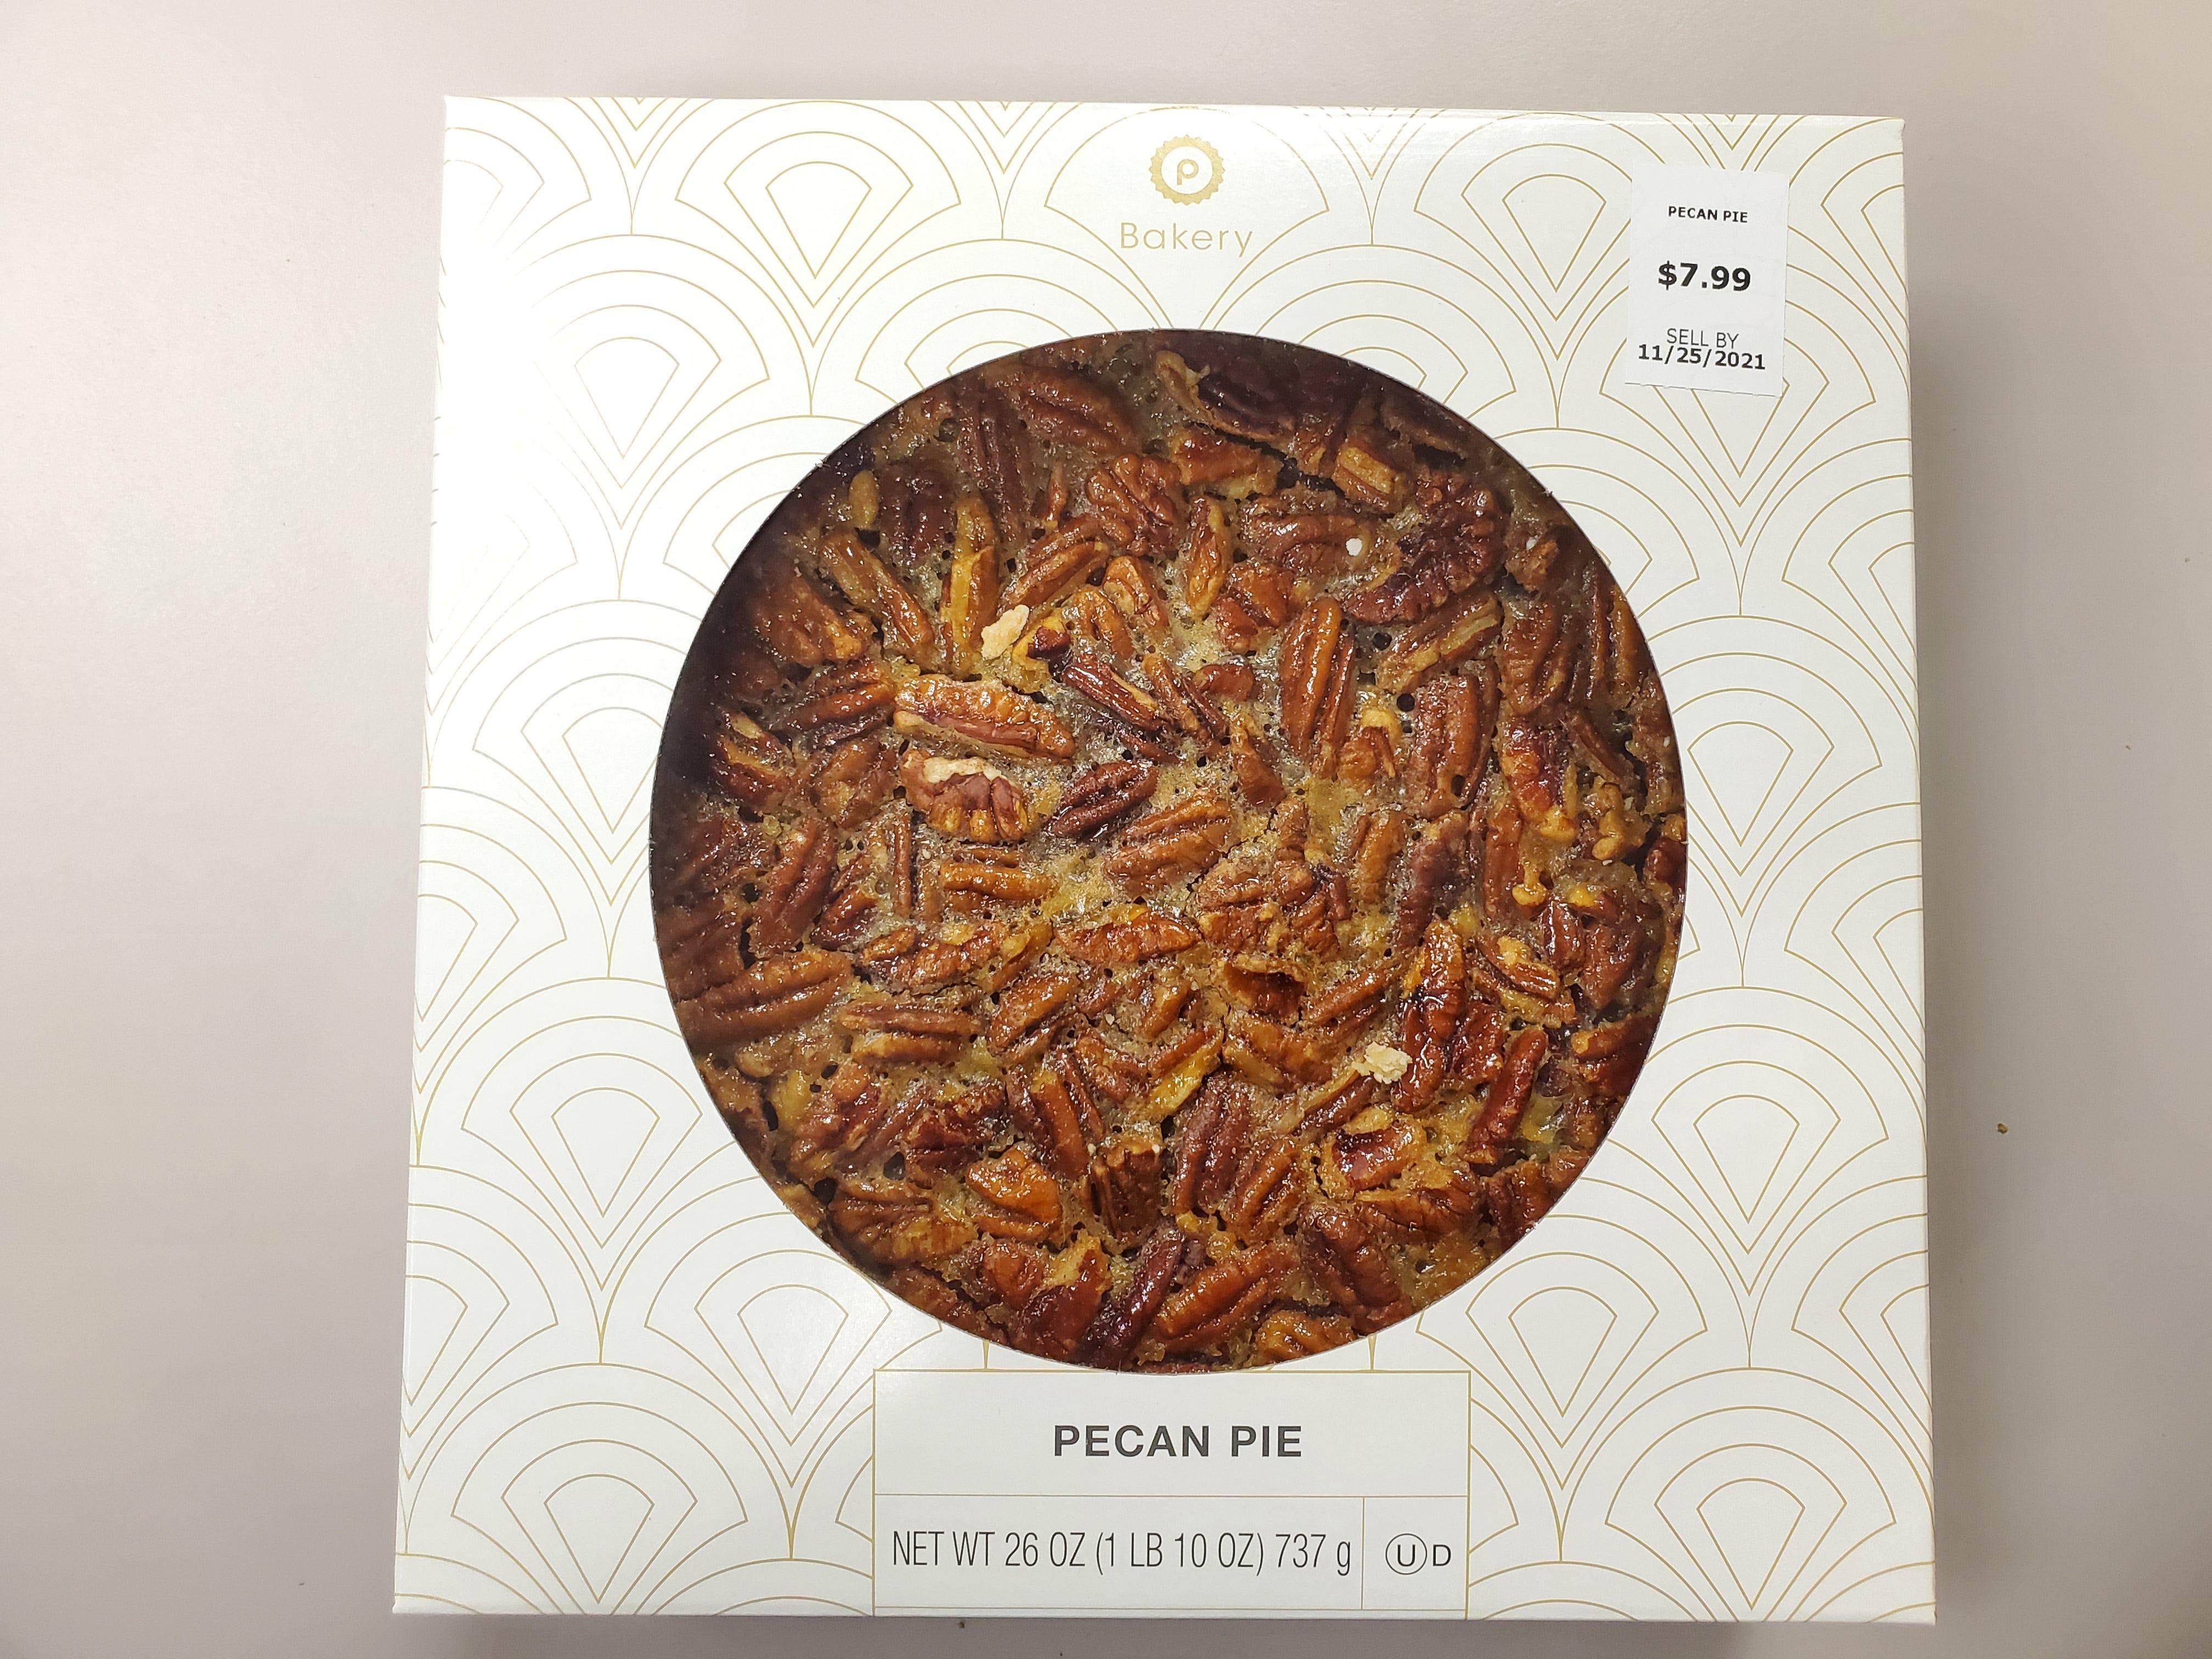 Public pecan pie. $7.99 for a 26-ounce pie.